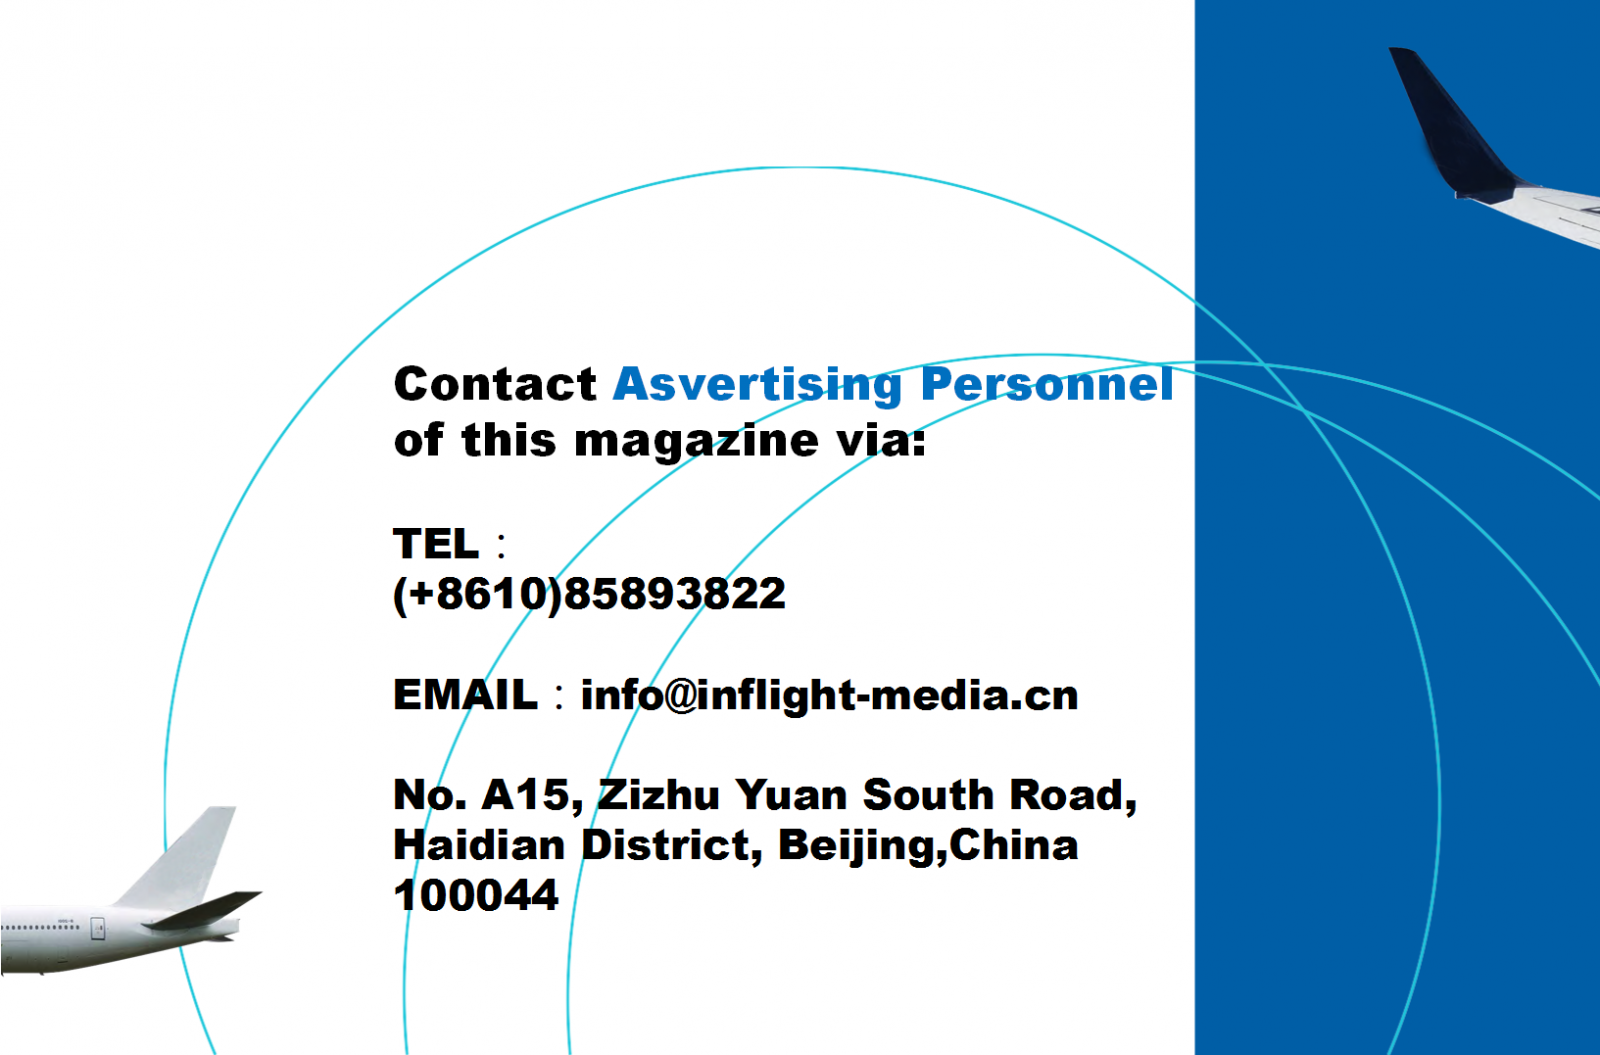 Shenzhen Airlines magazine